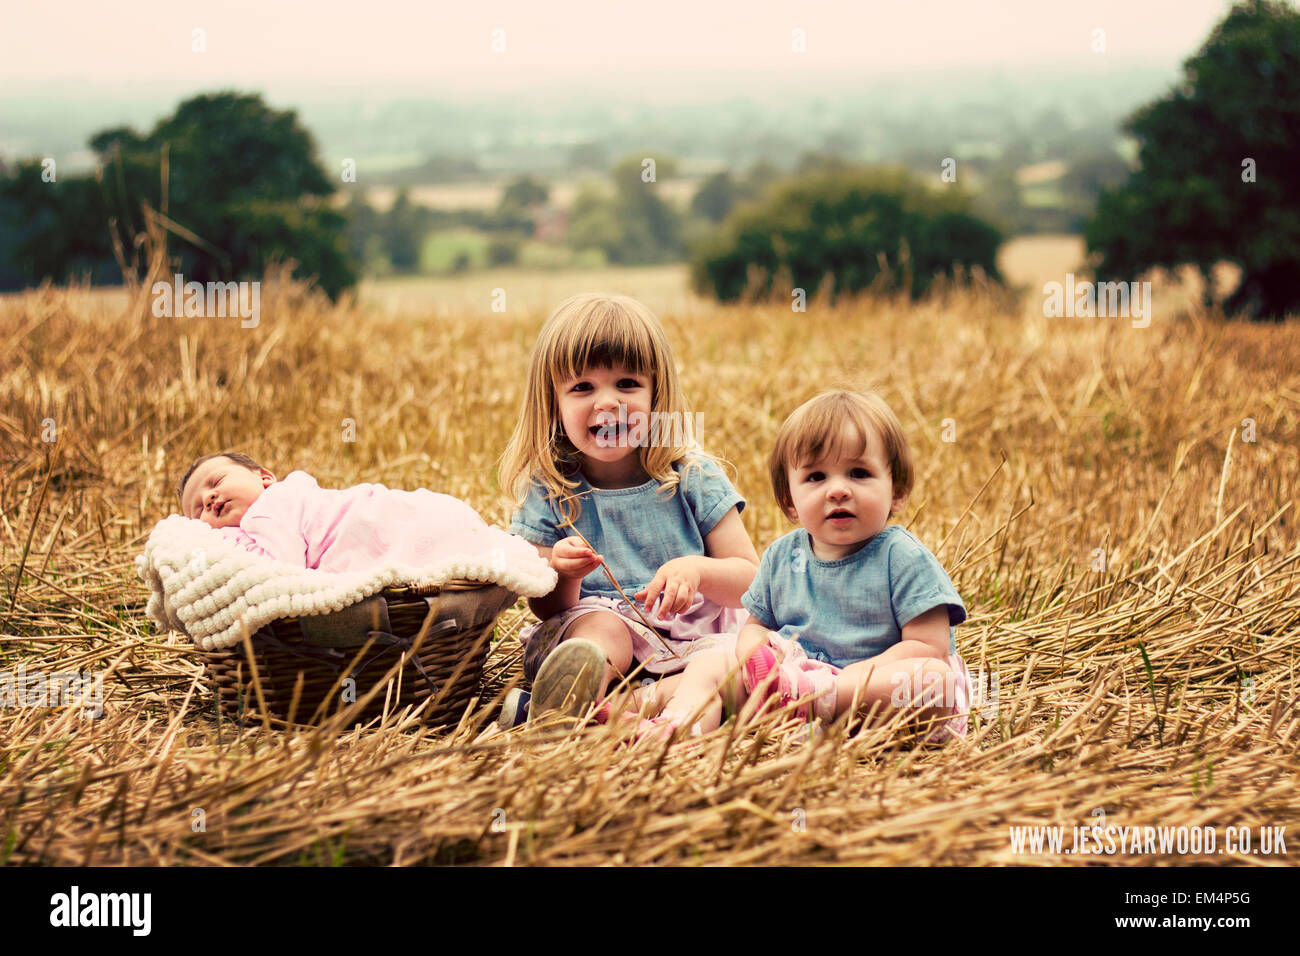 three children girls in a golden field, baby, toddler, landscape Stock Photo